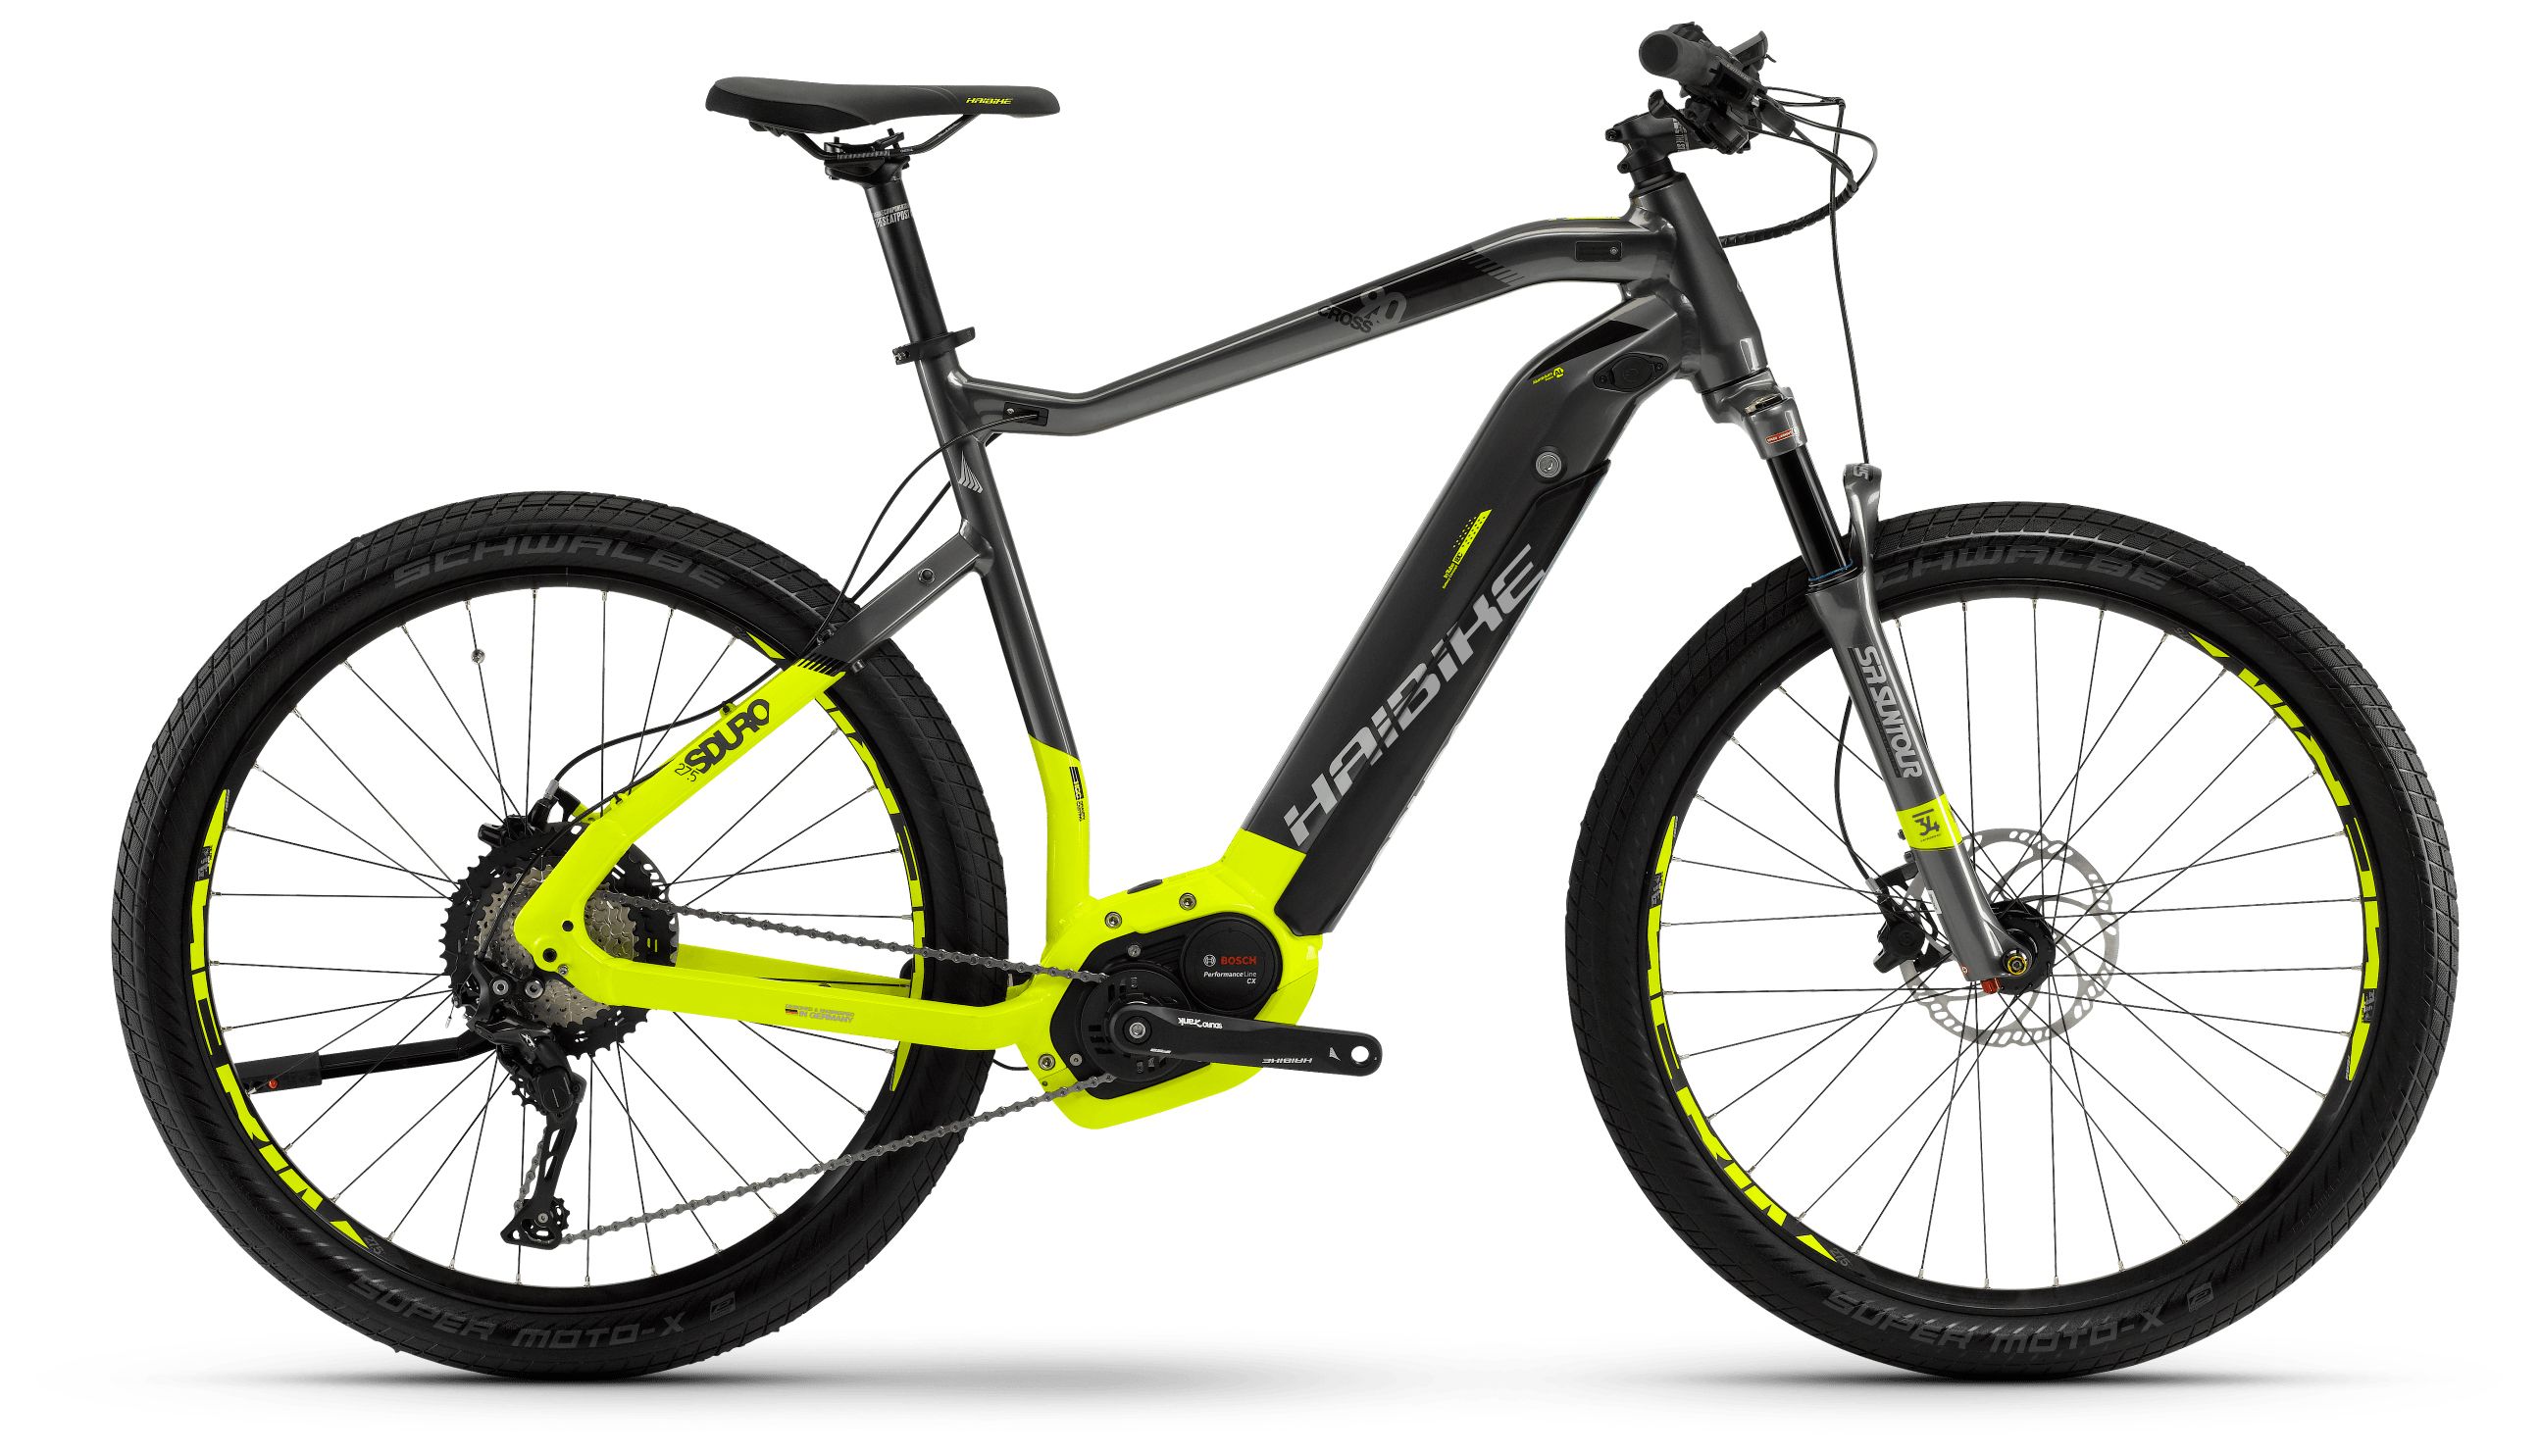  Отзывы о Электровелосипеде Haibike Sduro Cross 9.0 men 500Wh 11s XT 2018